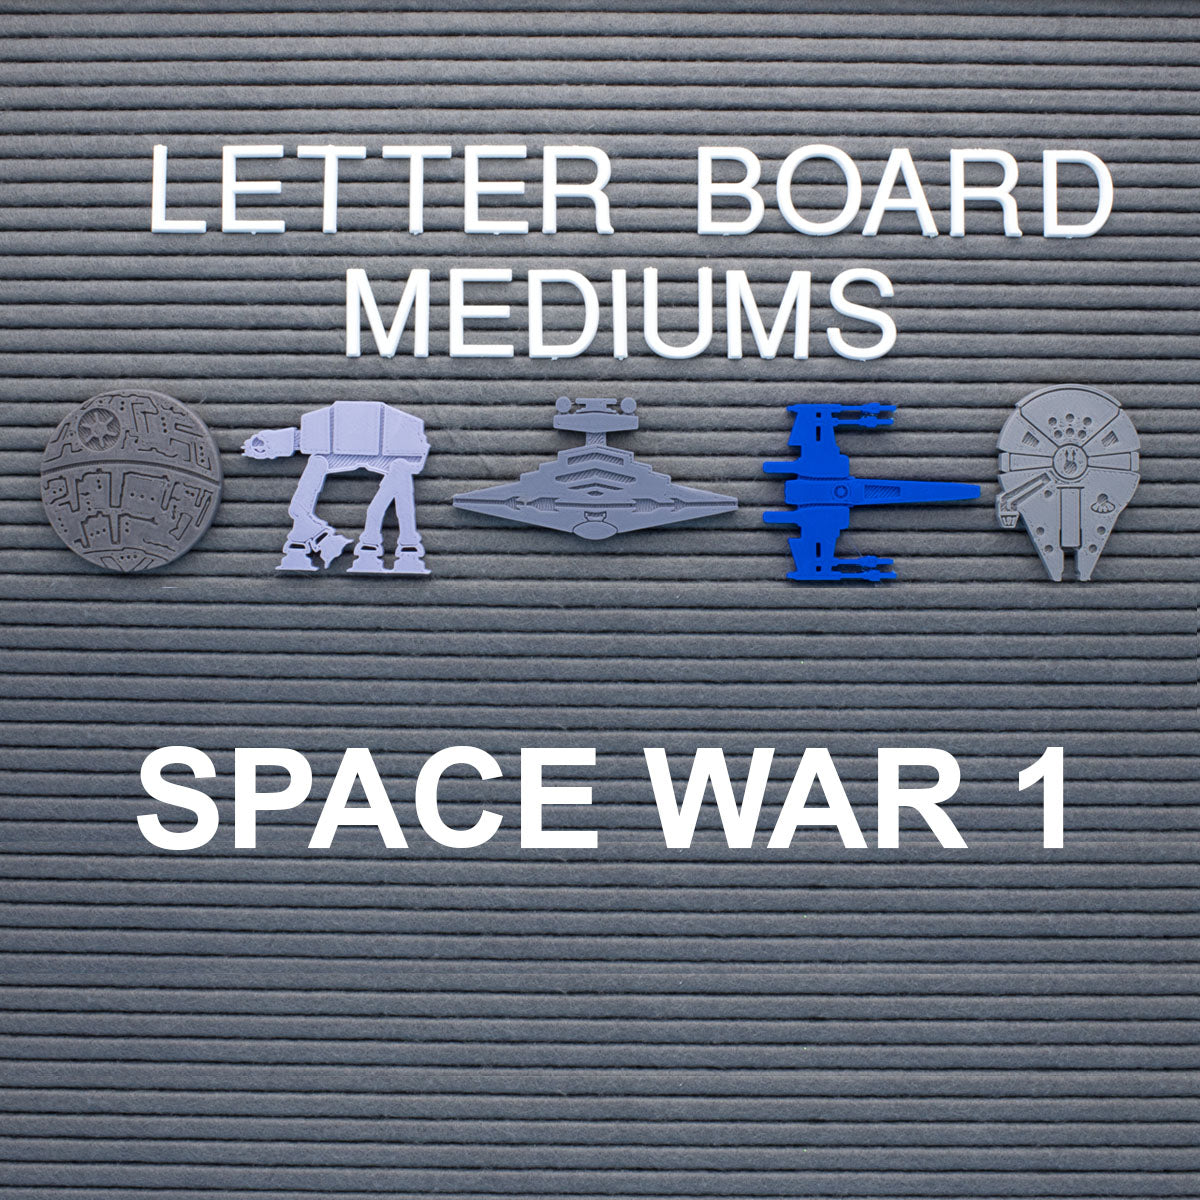 Space War 1 Letter Board Mediums